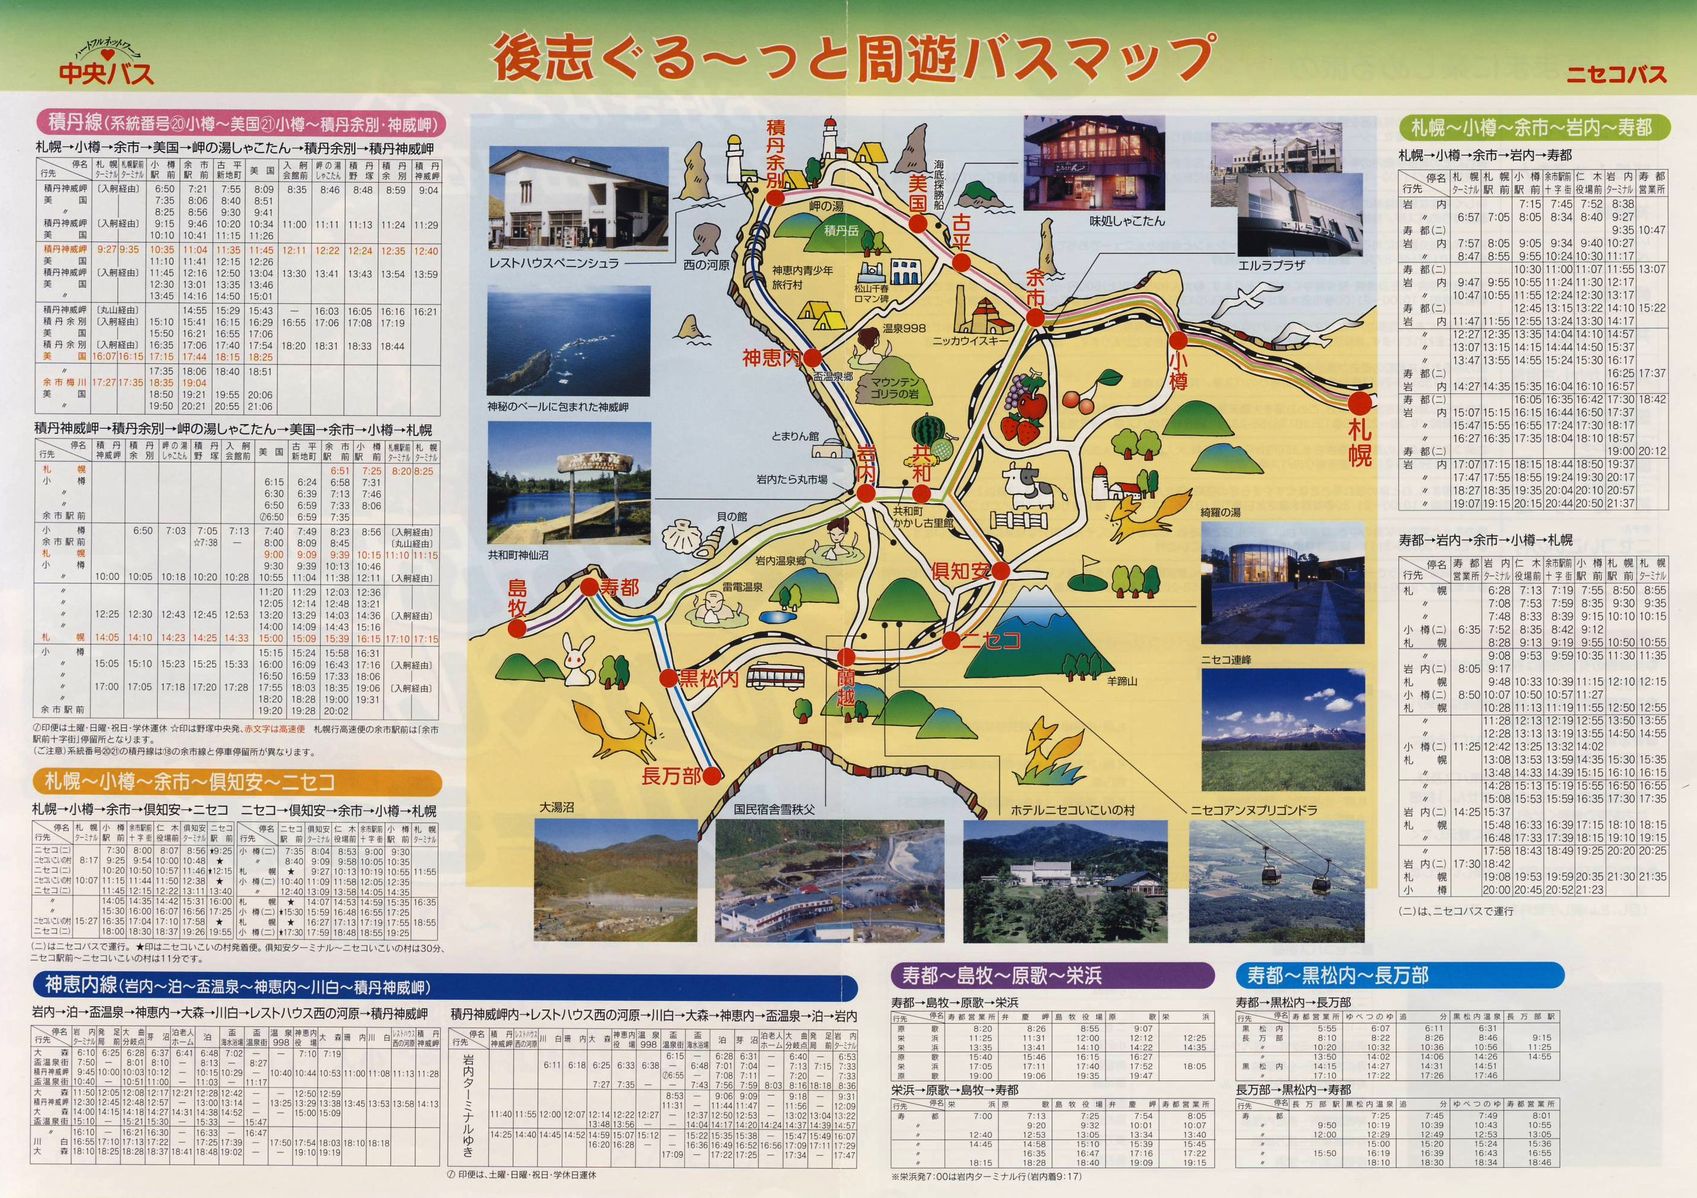 2003-04-29現在_ニセコバス・北海道中央バス_ぐらんぶる・しりべしフリーきっぷチラシ裏面